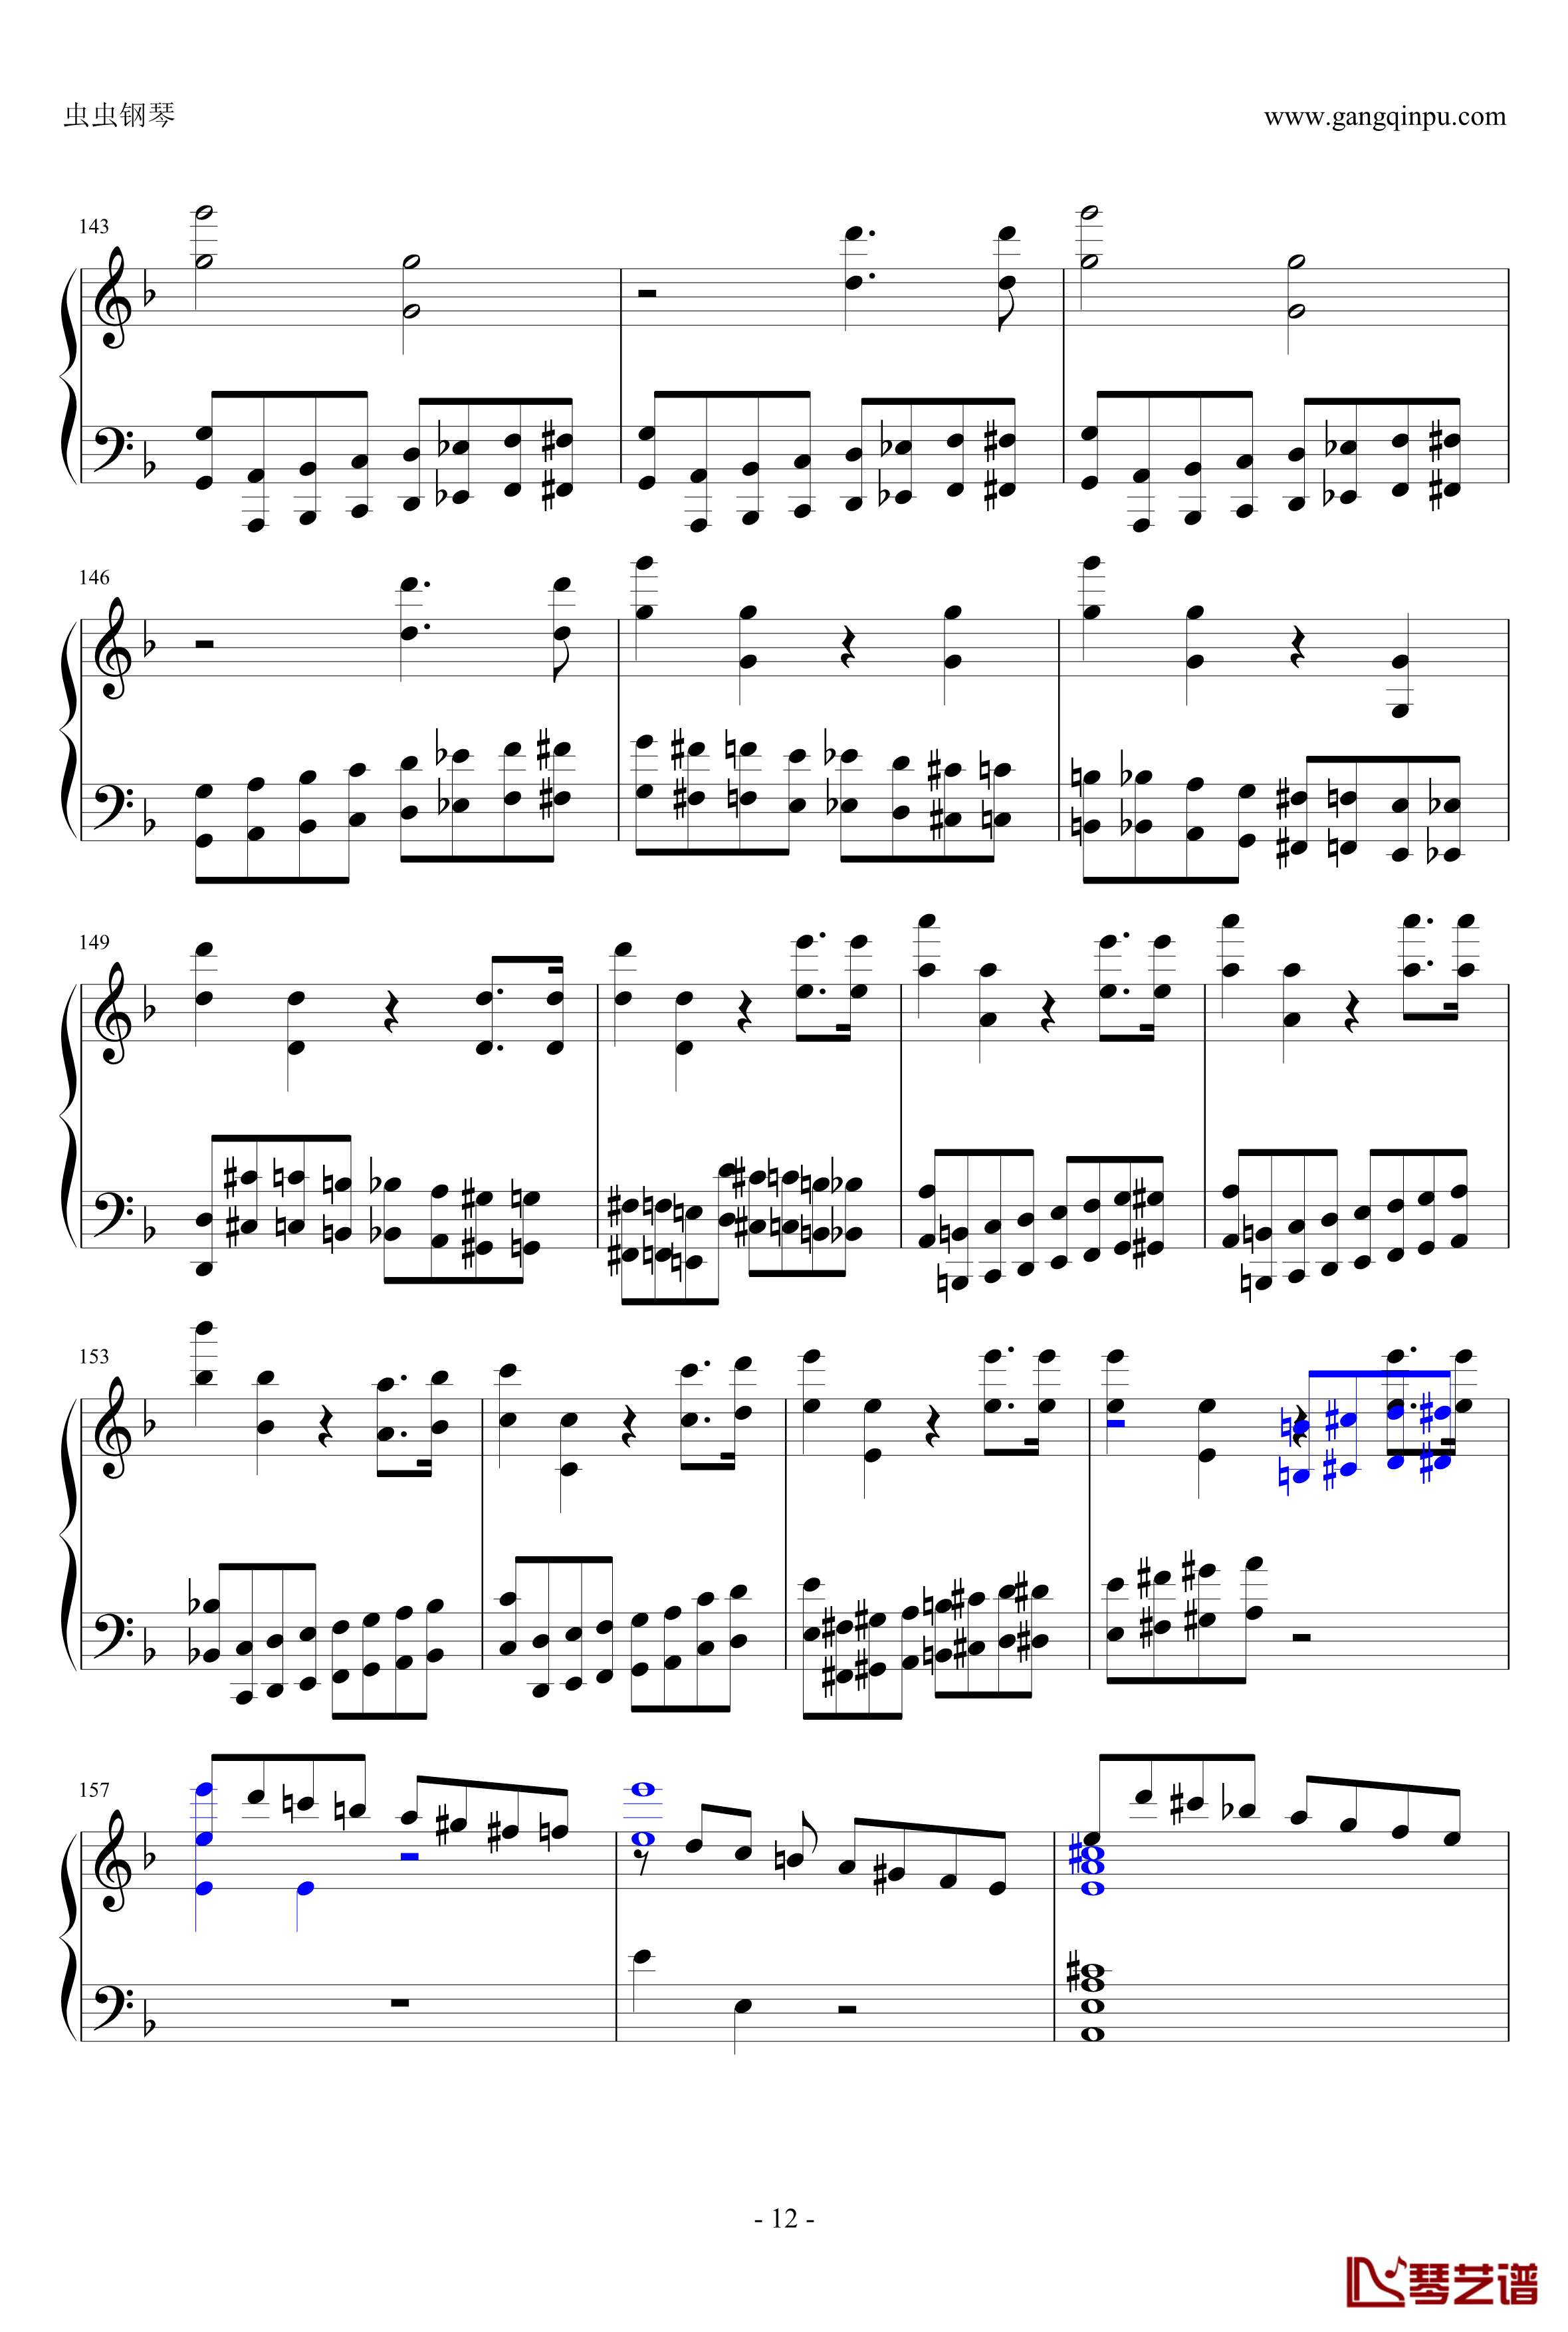 布鲁克纳第五交响曲第四乐章钢琴谱-钢琴独奏版